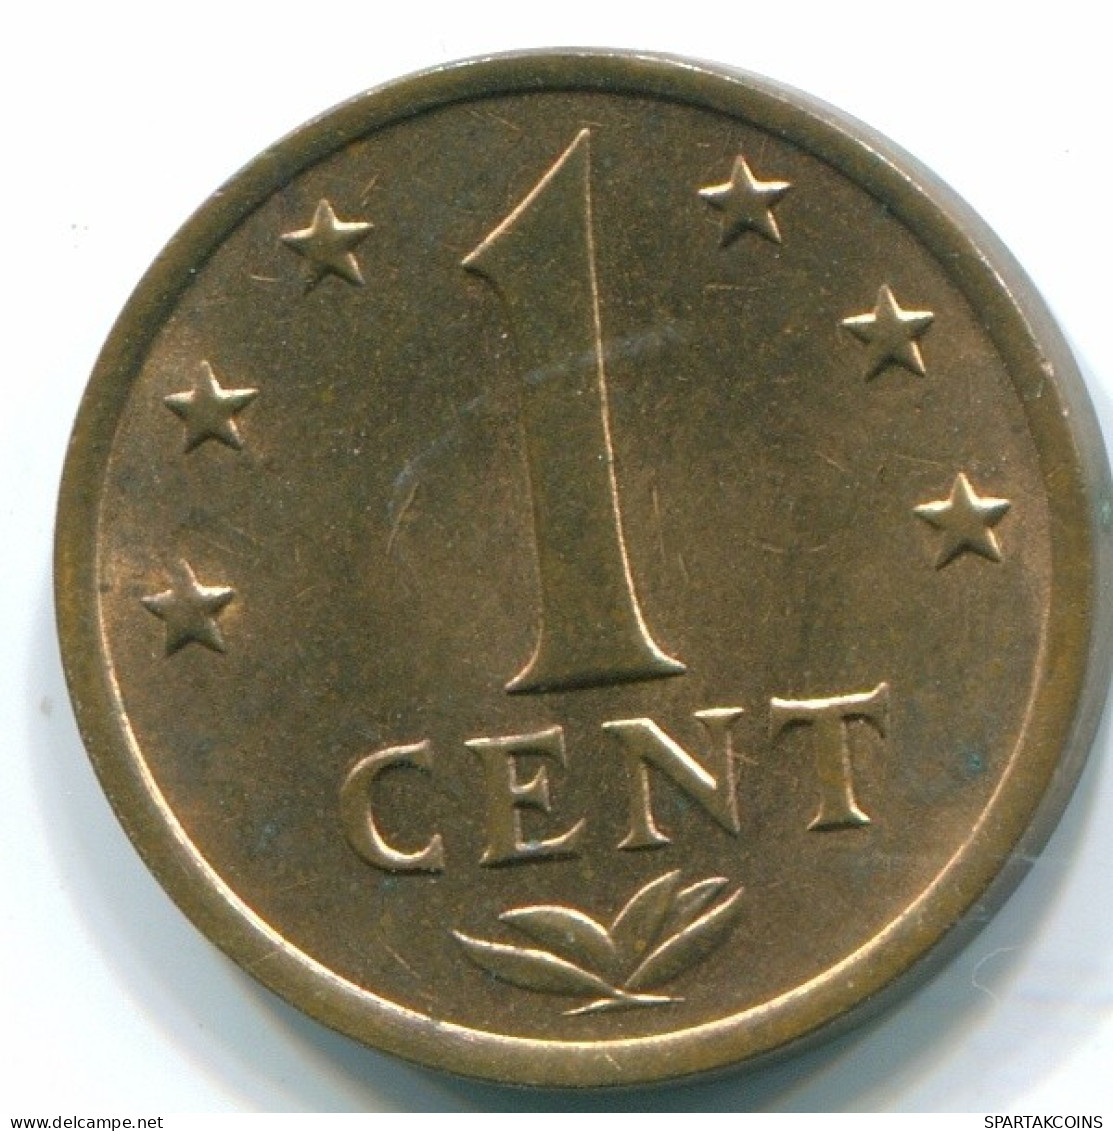 1 CENT 1971 NIEDERLÄNDISCHE ANTILLEN Bronze Koloniale Münze #S10608.D.A - Nederlandse Antillen